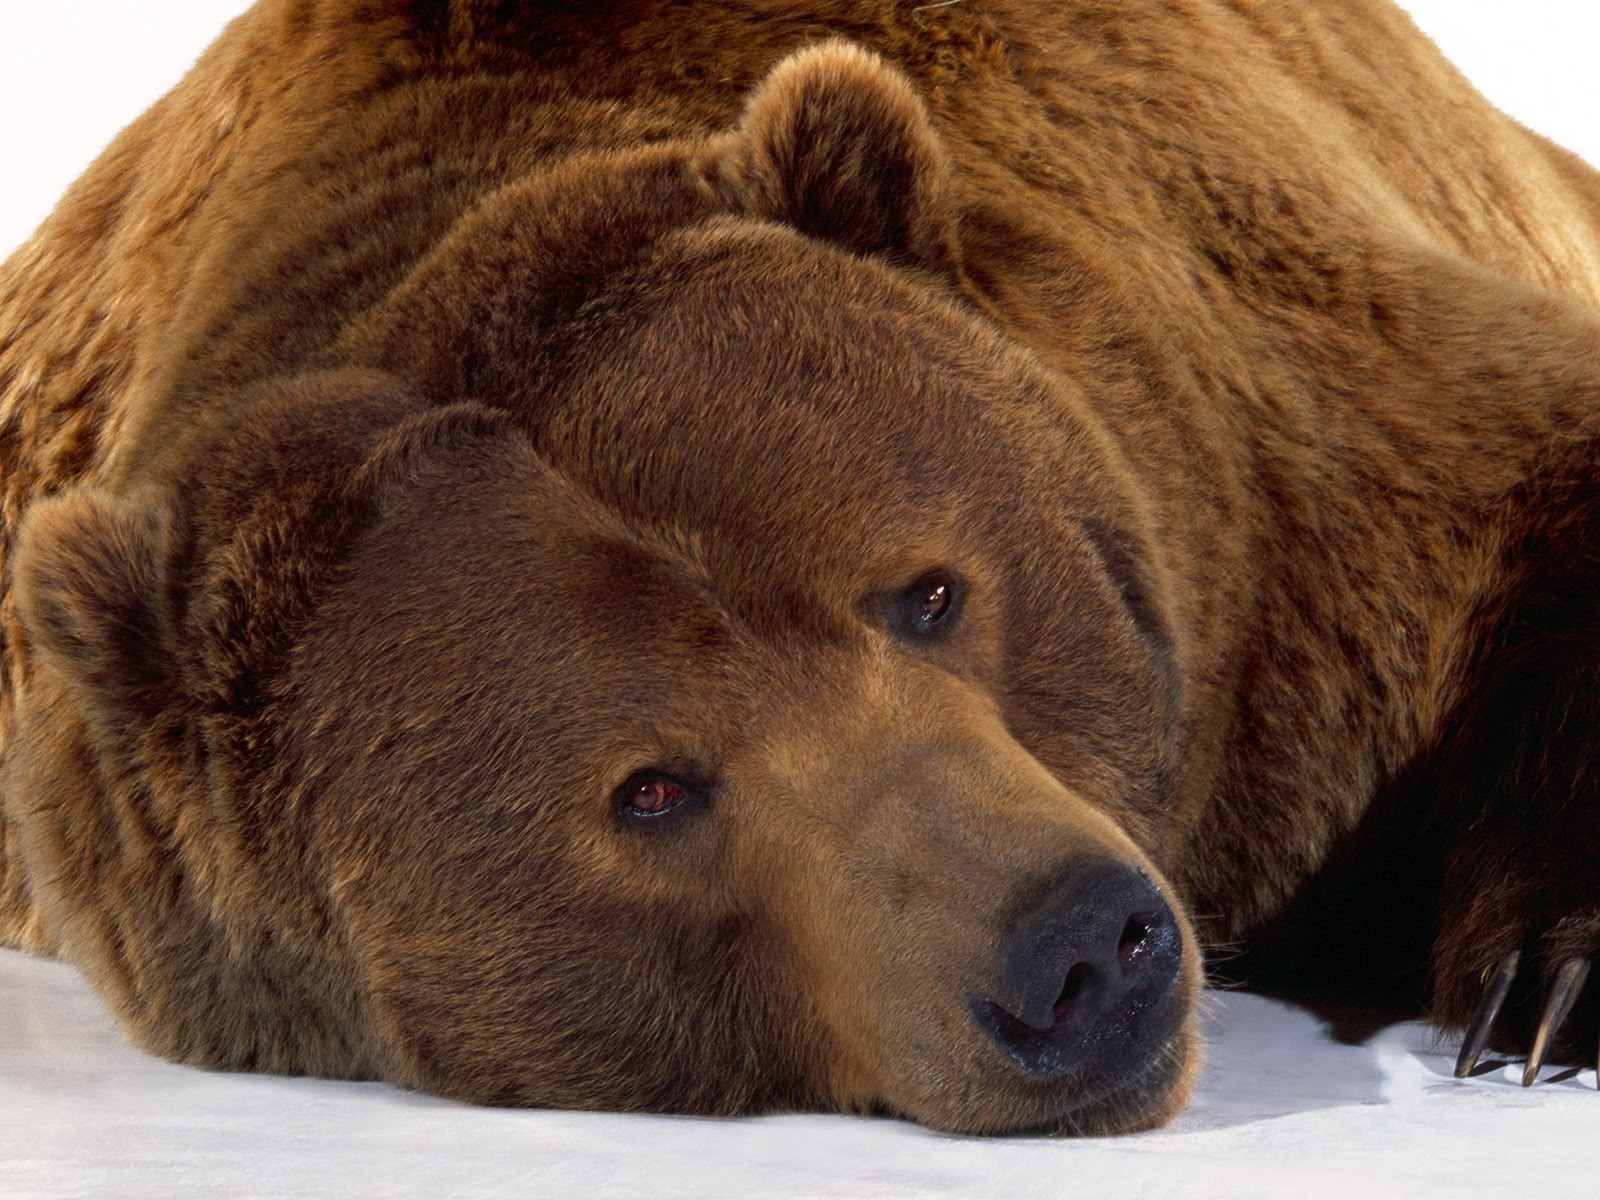 sfondi barba hd,orso bruno,orso grizzly,orso,orso kodiak,animale terrestre